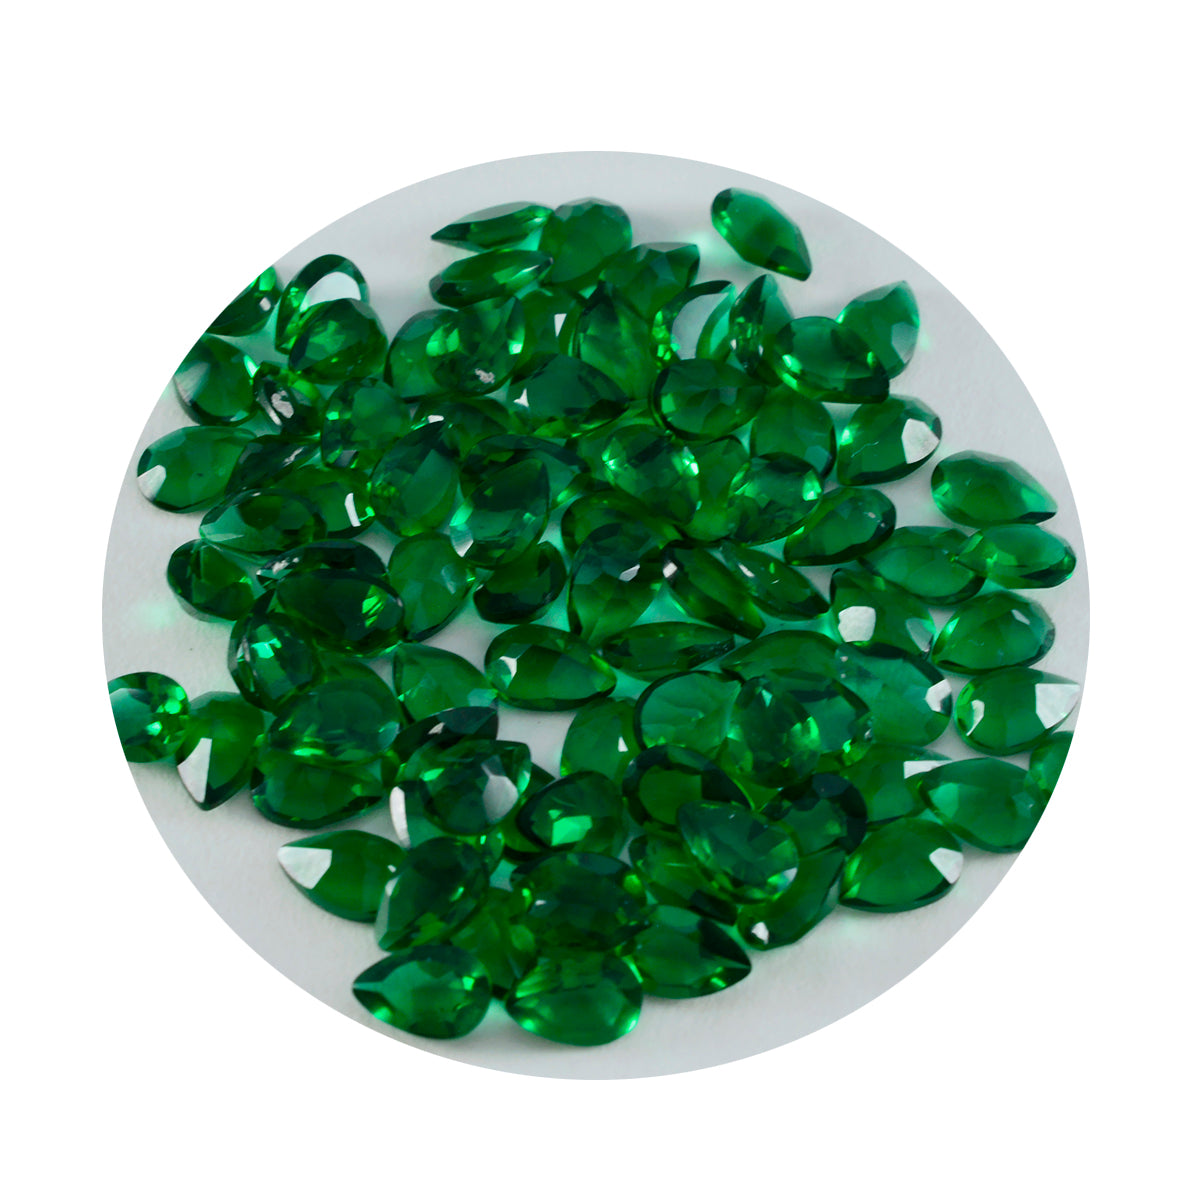 Riyogems 1 Stück grüner Smaragd, CZ, facettiert, 3 x 5 mm, Birnenform, schöner hochwertiger loser Stein